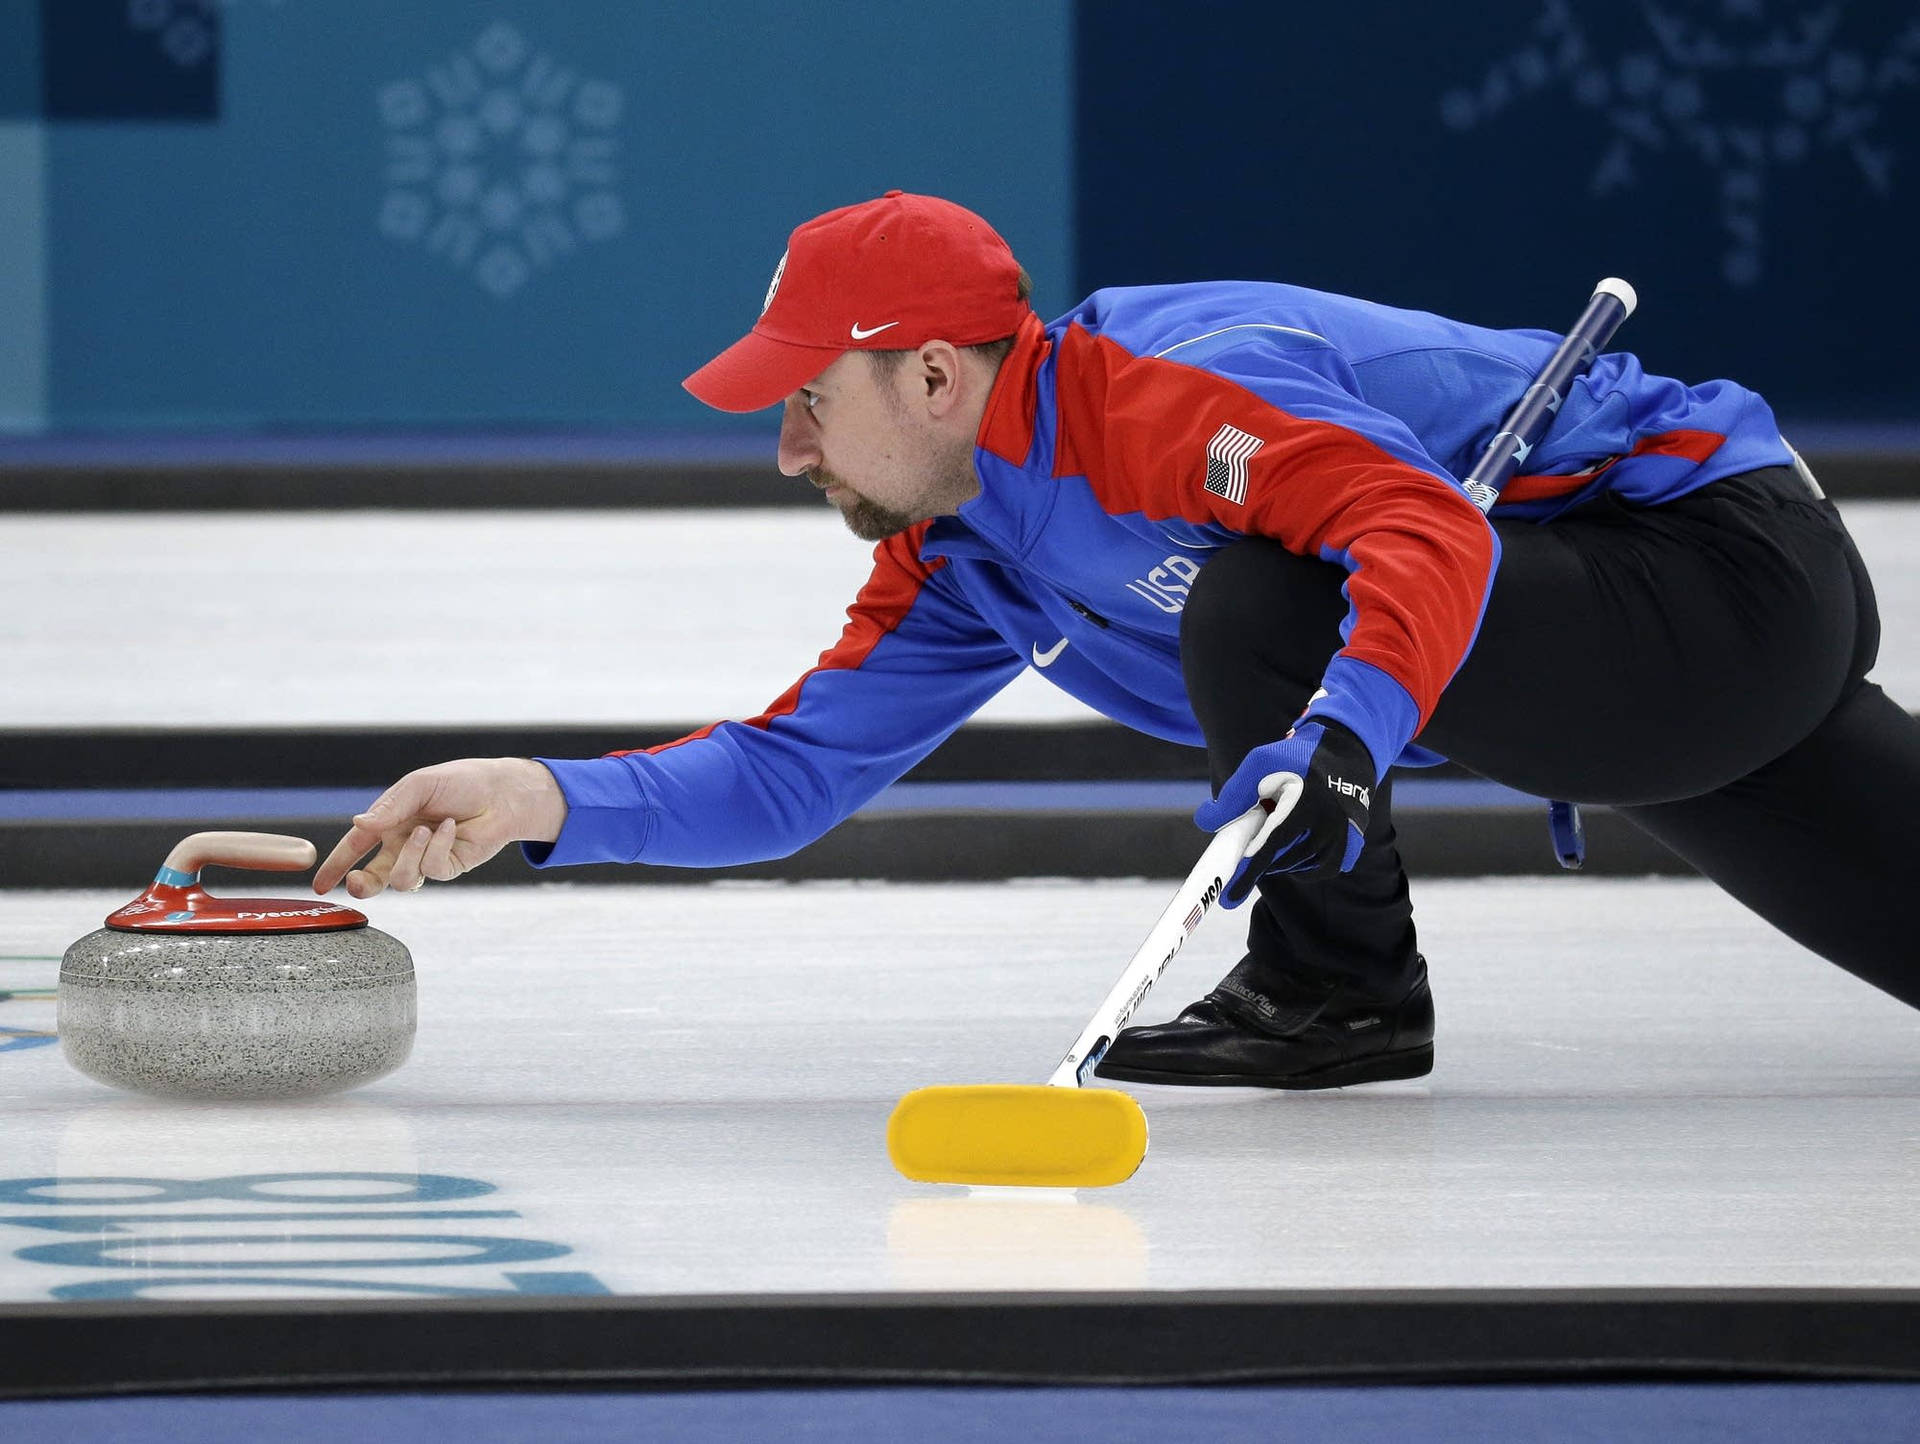 Sportler,die Die Steine Beim Curling Gleiten Lassen Wallpaper